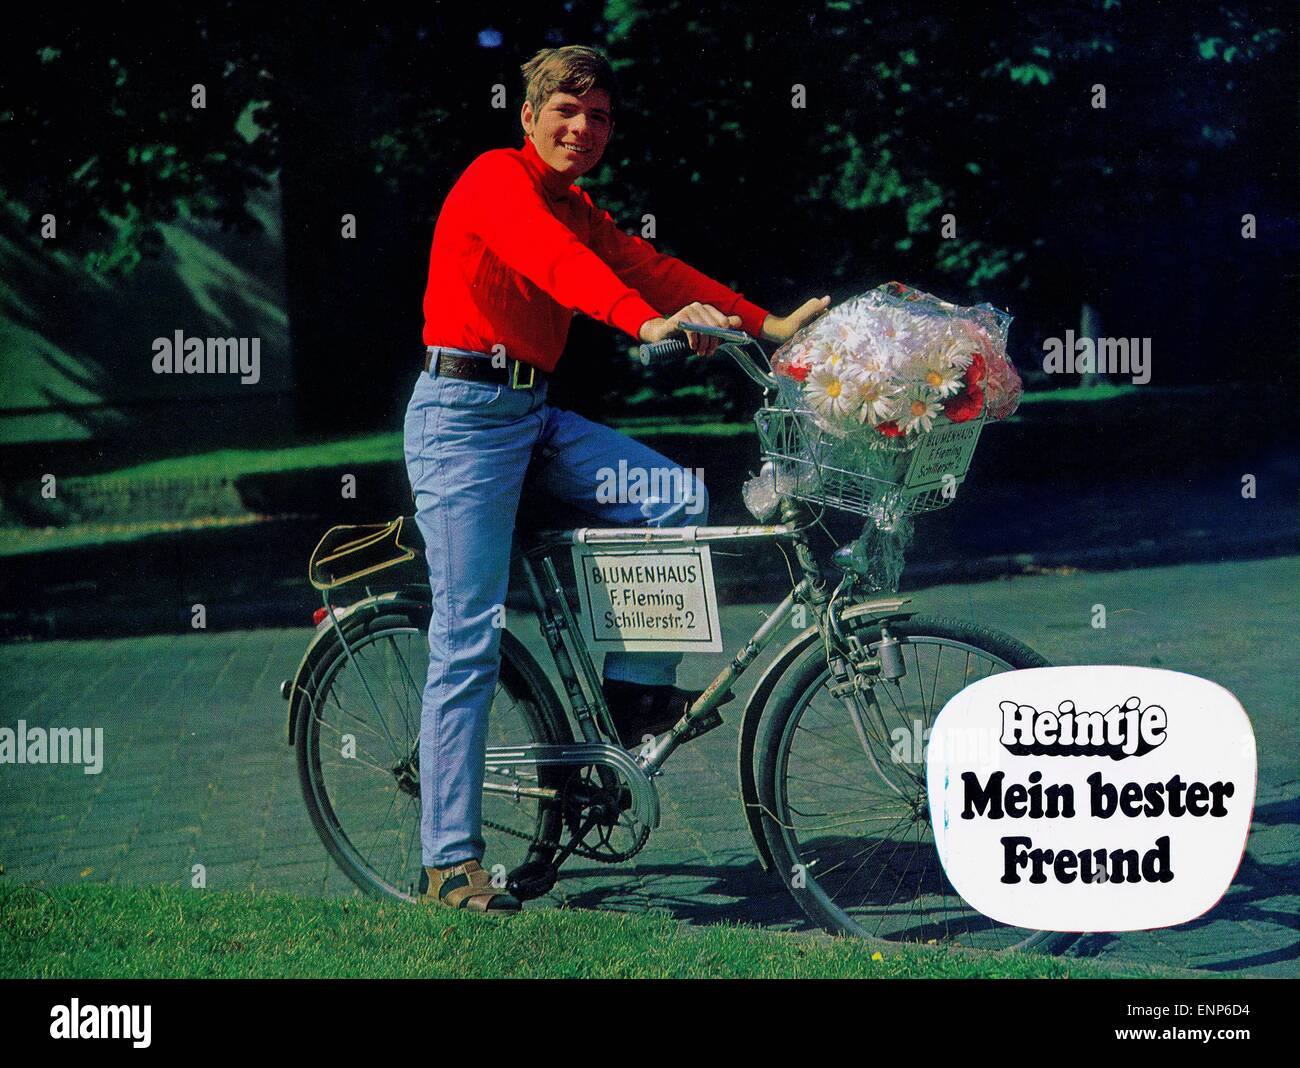 Heintje - Mein bester Freund, Deutschland 1970, Regie: Werner Jacobs, Darsteller: Hein Heintje Simons Stock Photo